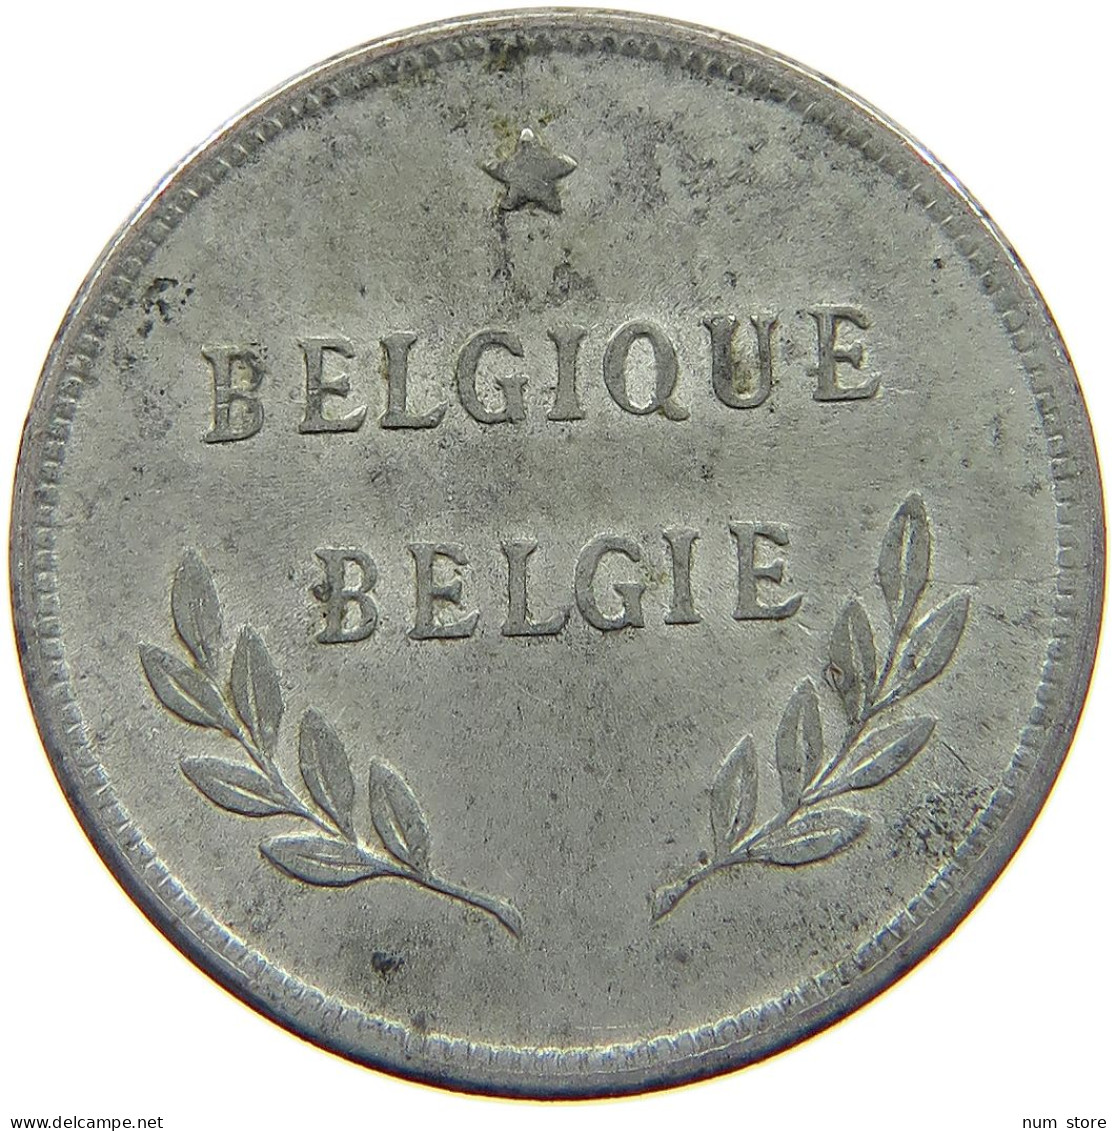 BELGIUM 2 FRANCS 1944 #c007 0279 - 2 Francs (1944 Libération)